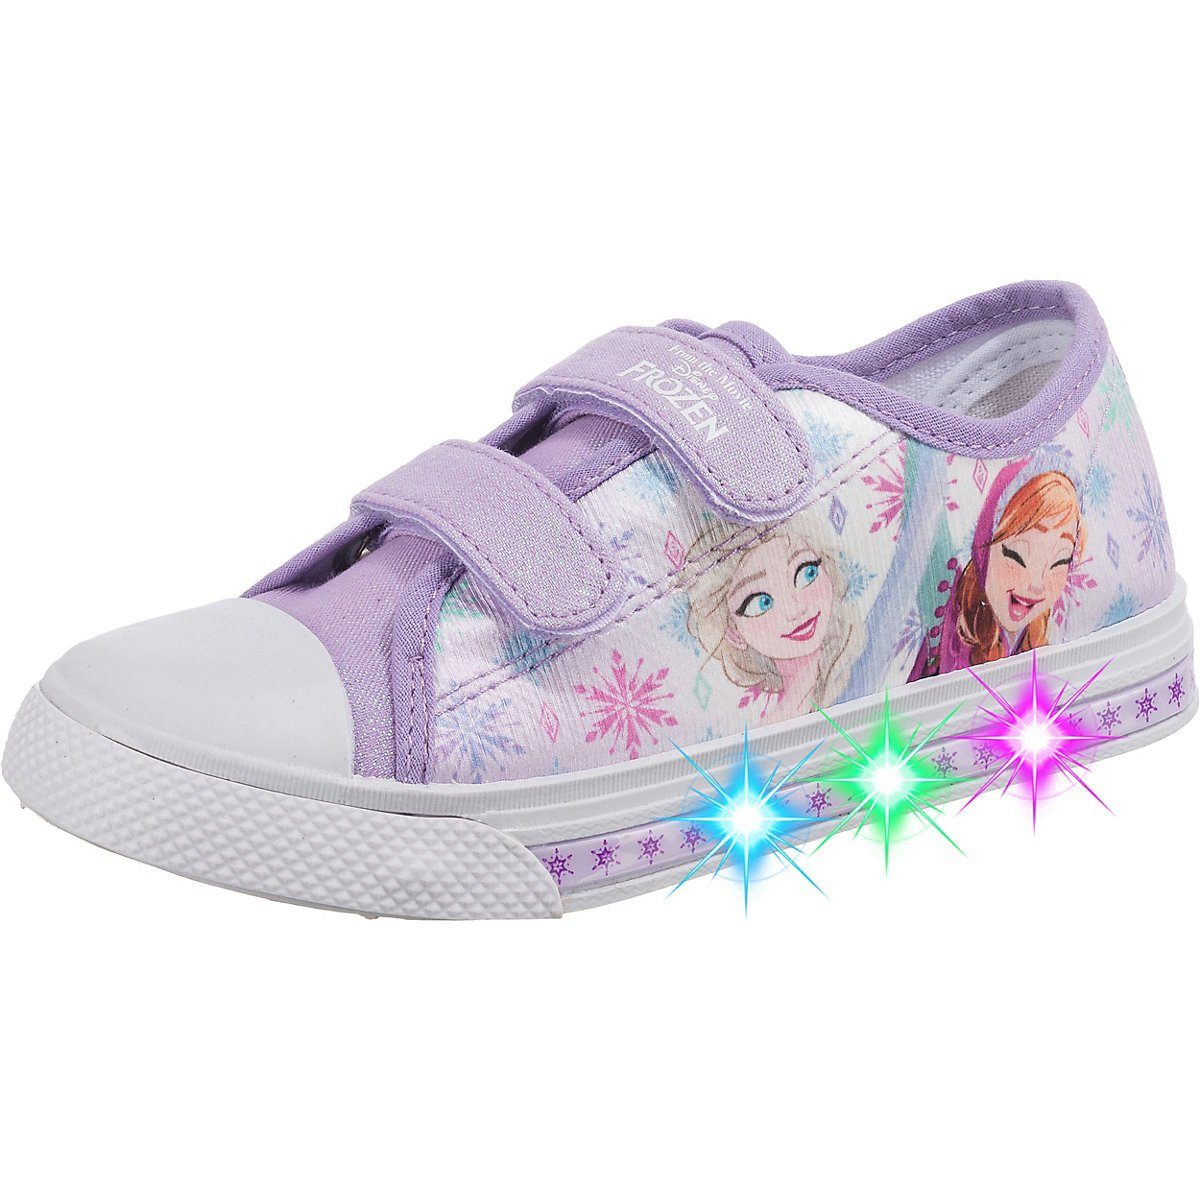 Schuhe Alle Sneaker Disney Frozen Disney Die Eiskönigin Sneakers Low Blinkies TELA Sneaker